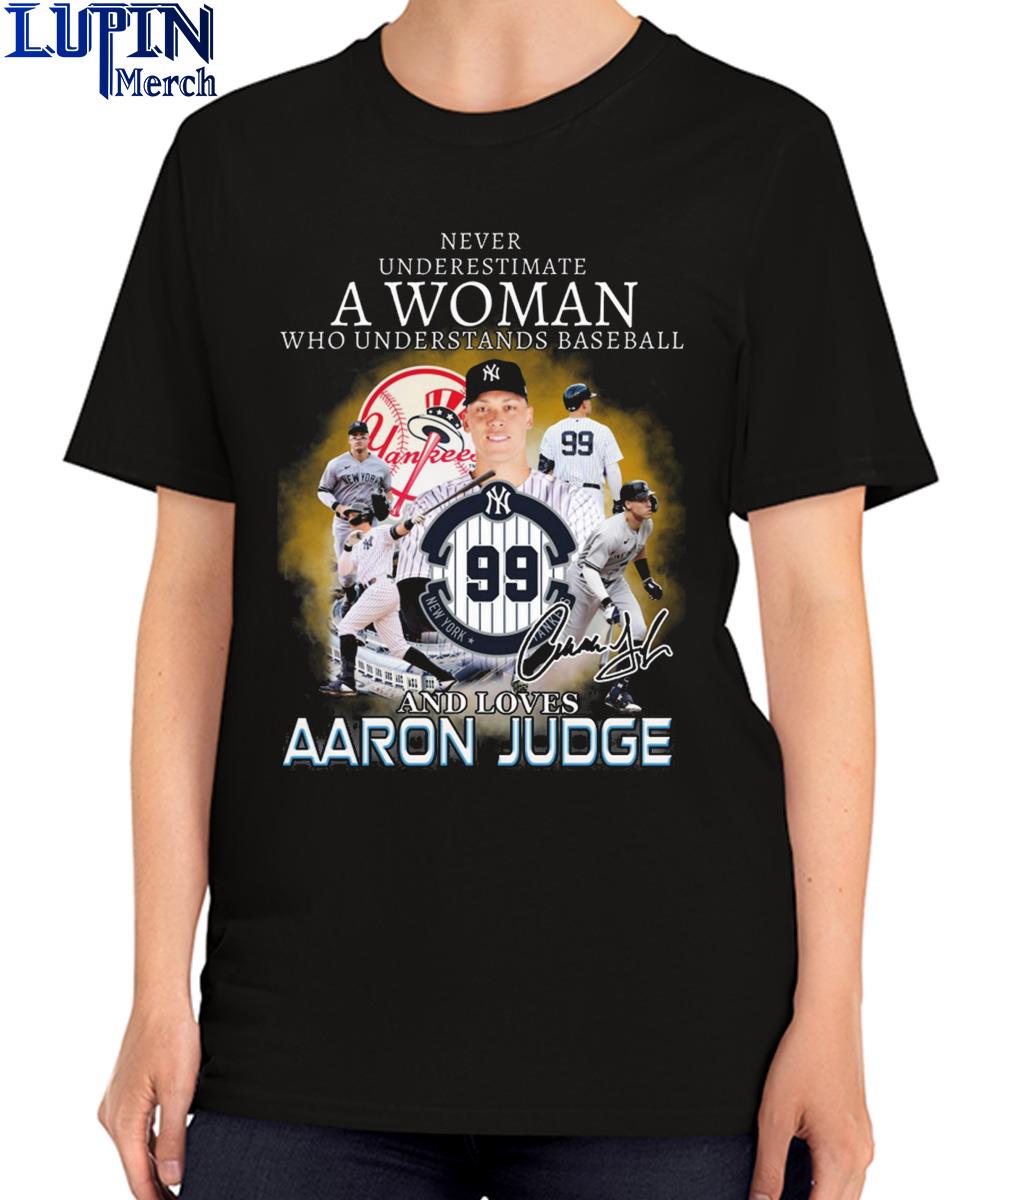 Aaron Judge New York baseball signature t-shirt, hoodie, sweater